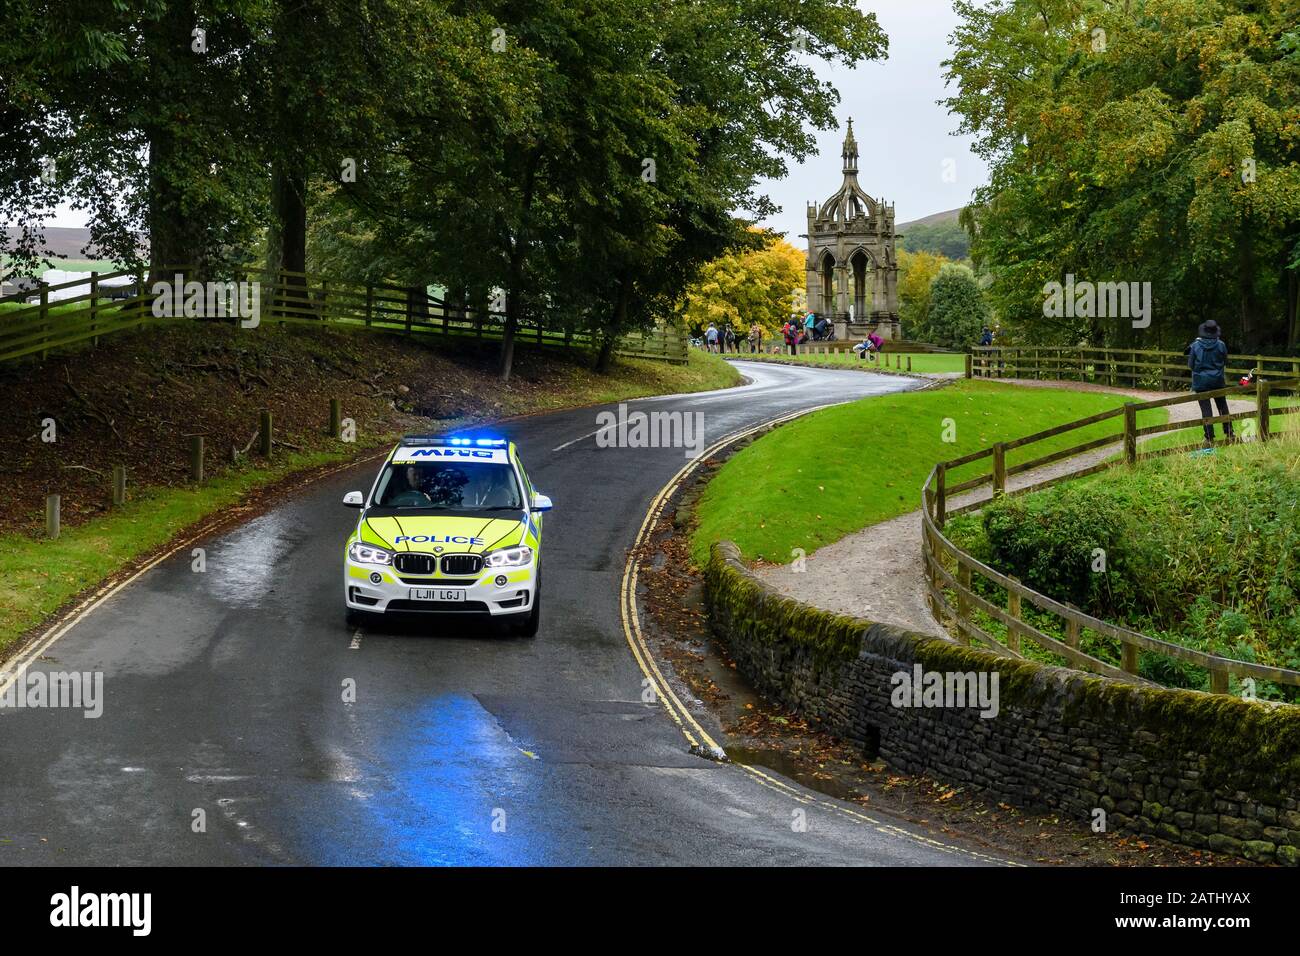 Voiture de police conduite et voyage sur la voie nationale avec feux bleus clignotants (véhicule BMW de contrôle de la circulation à l'événement) - Bolton Abbey, Yorkshire, Angleterre Royaume-Uni Banque D'Images